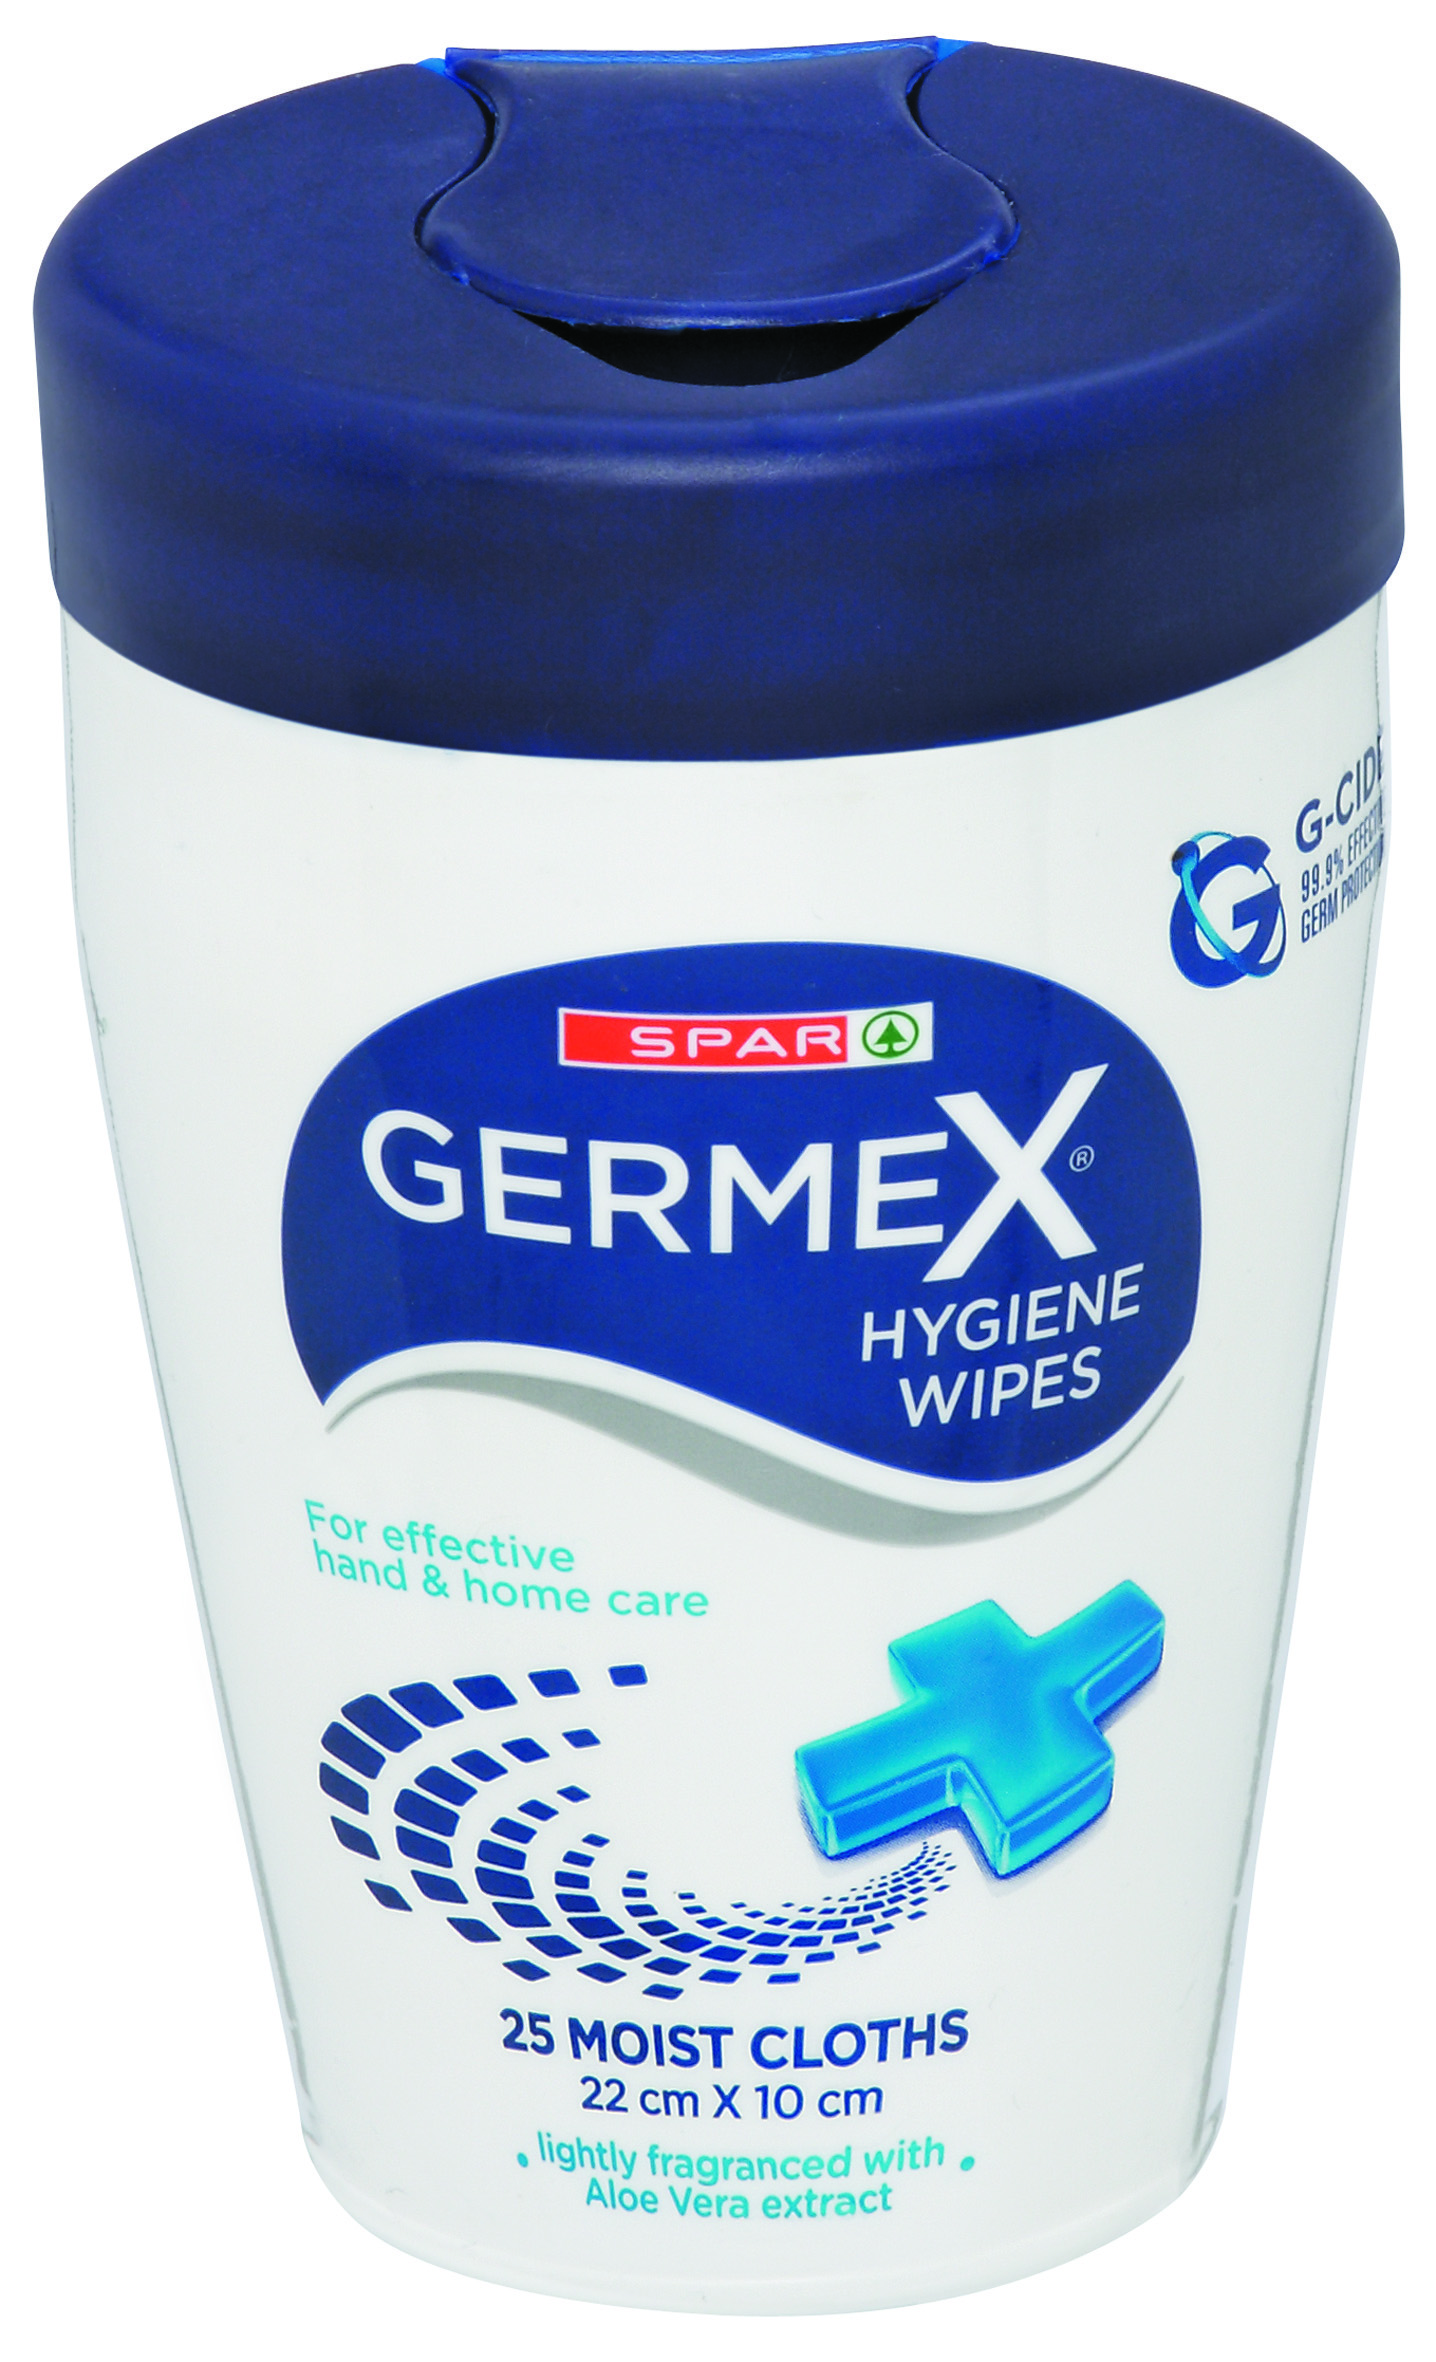 germex hygiene wipes